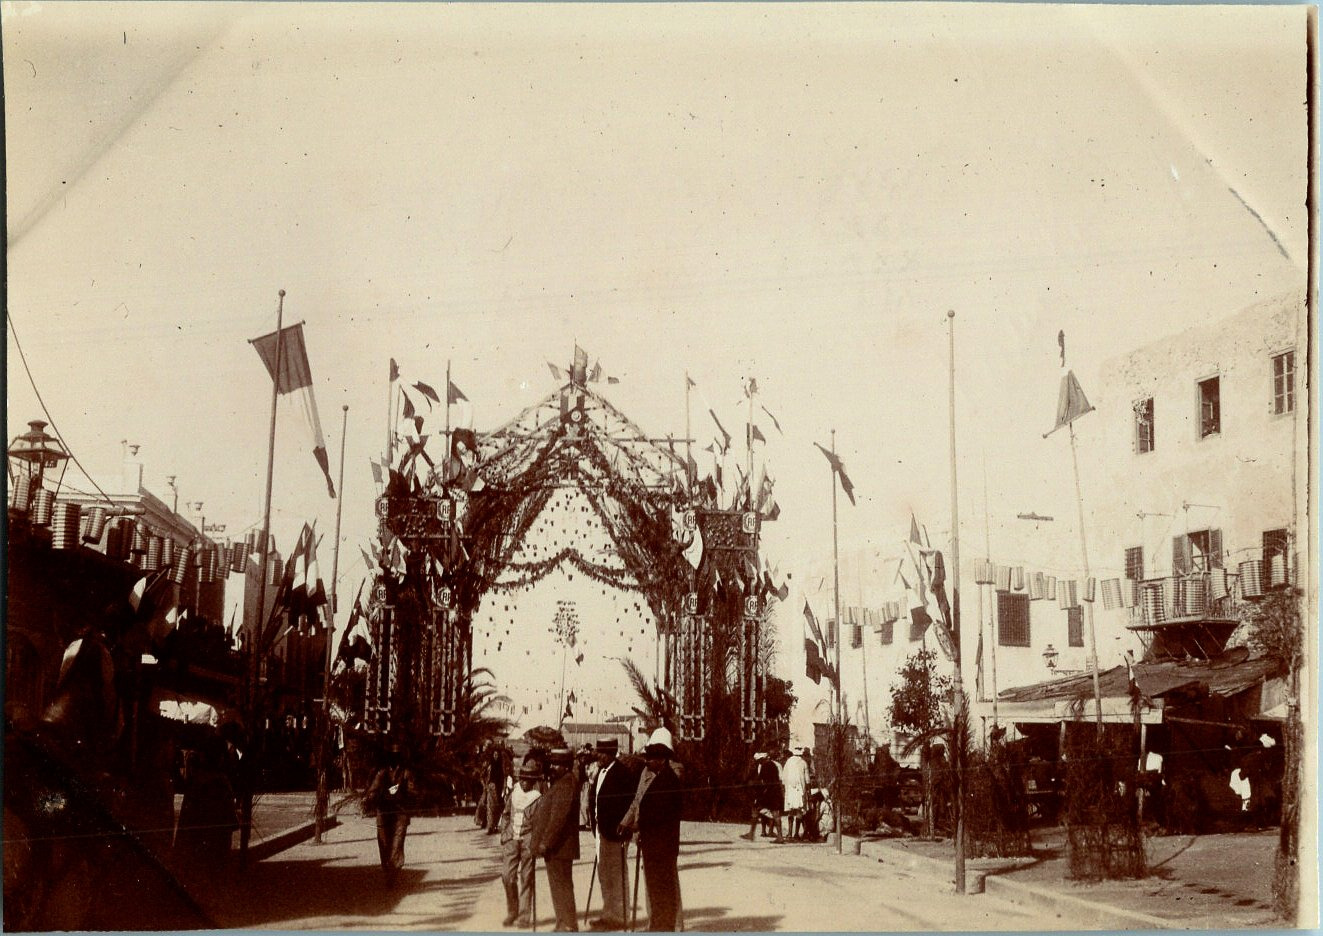 Tunisia, Sfax, Port 2 Inauguration Scene, Vintage Print, circa 1885 T